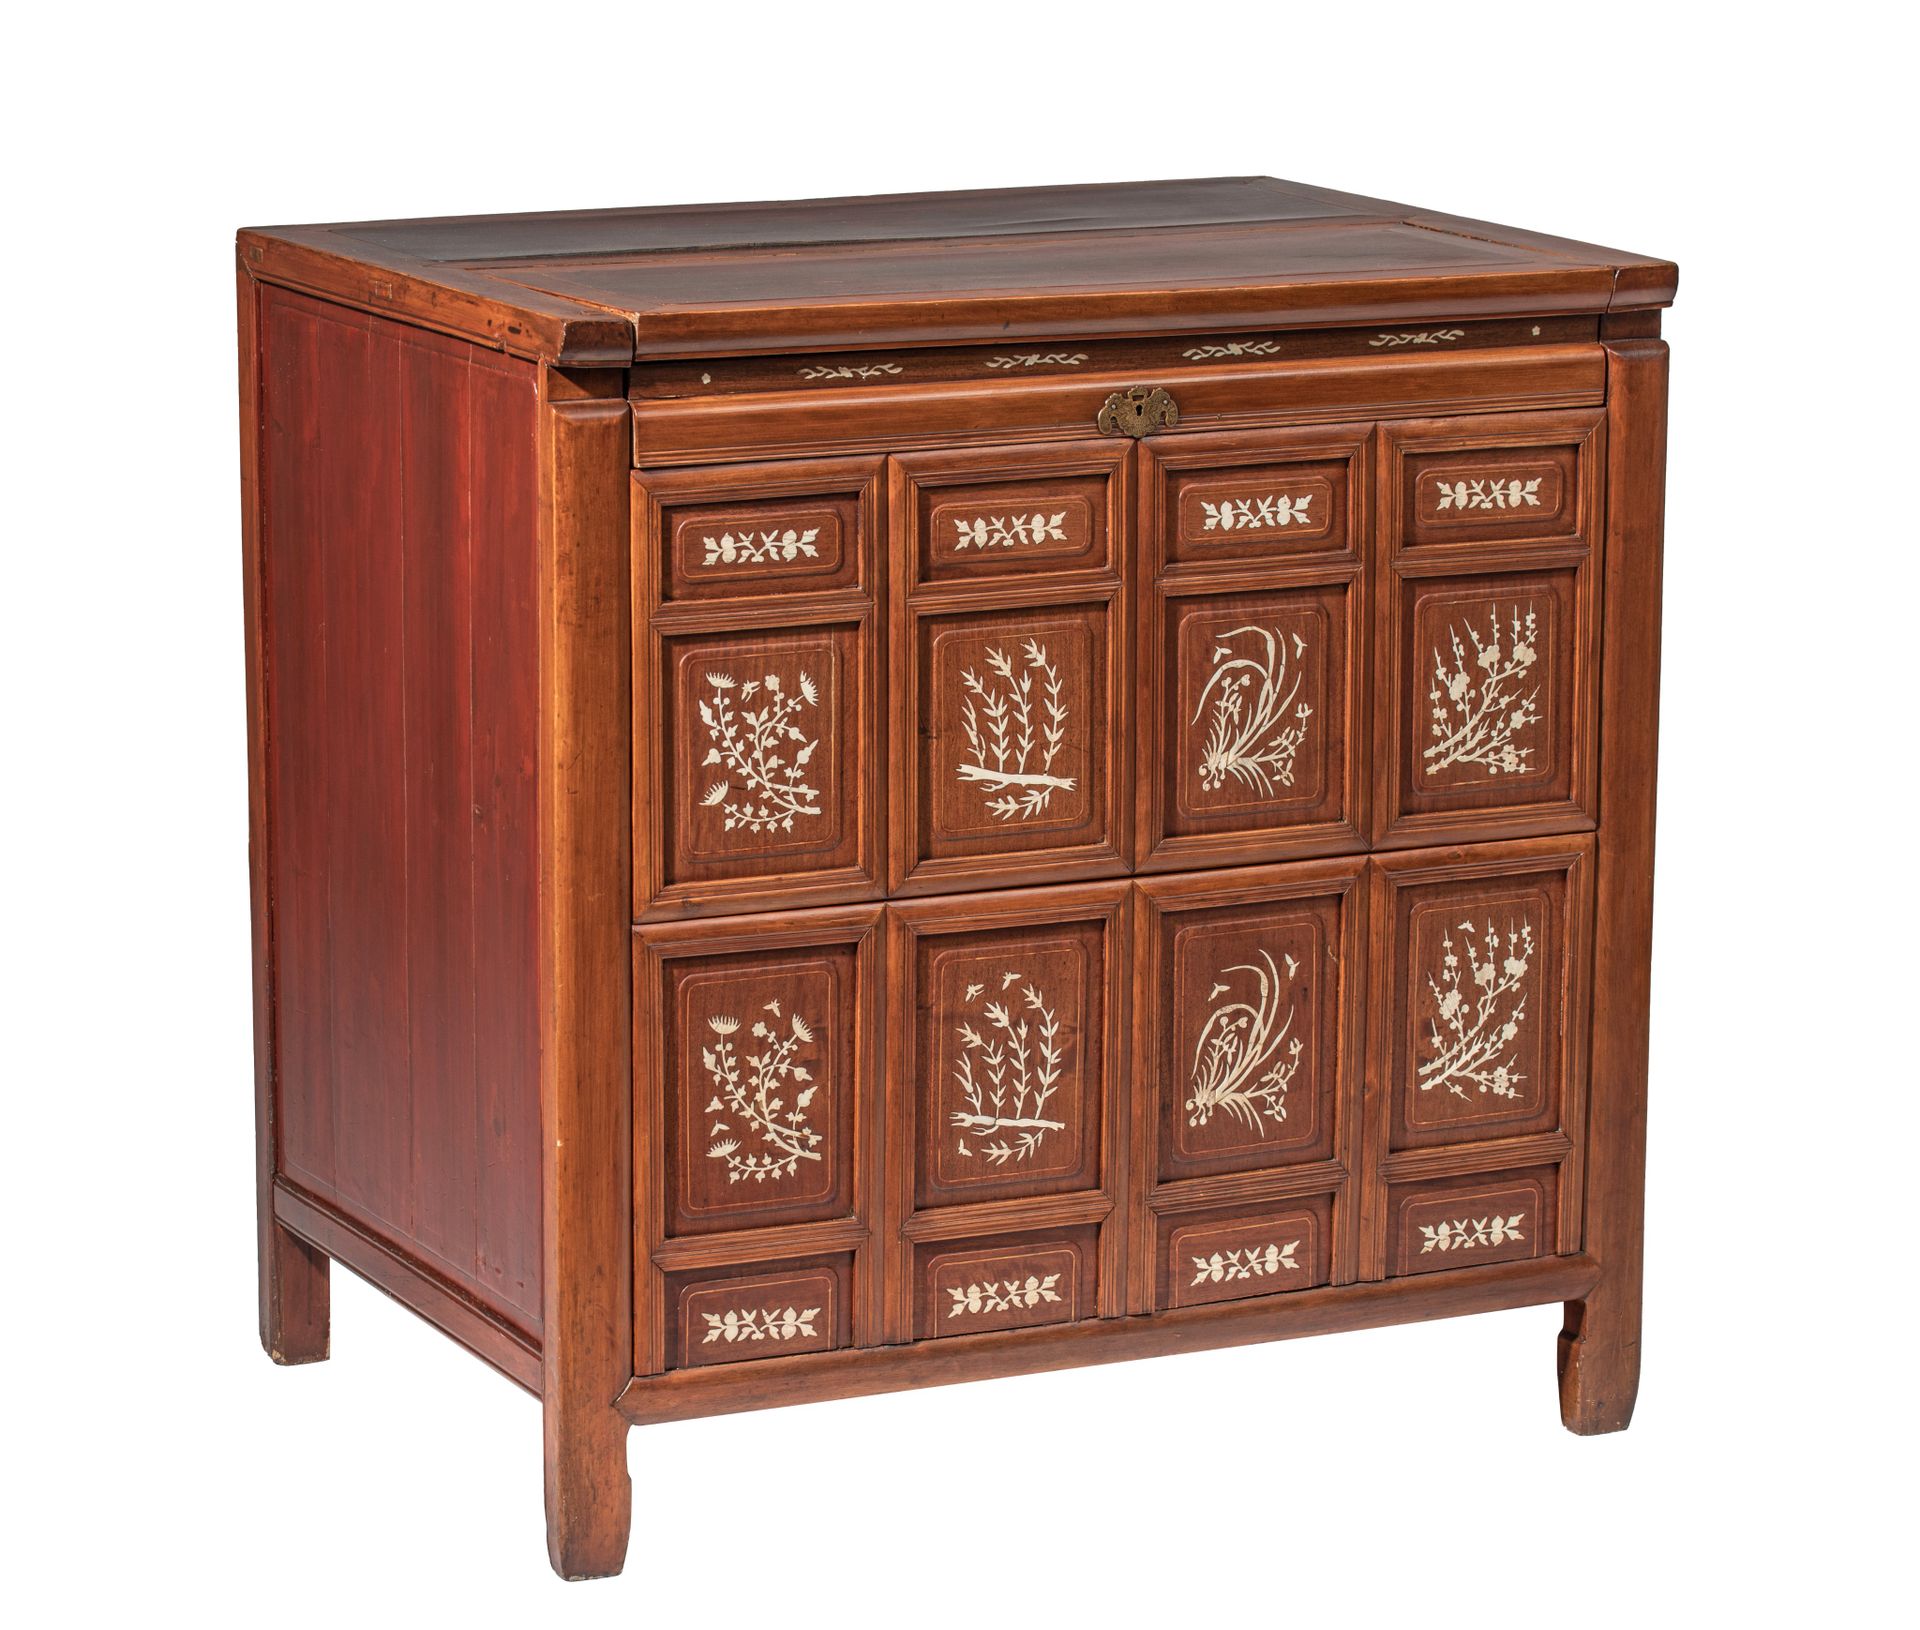 A Chinese assembled hardwood chest, 95 x 67 - H 95 cm Chinesische zusammengesetz&hellip;